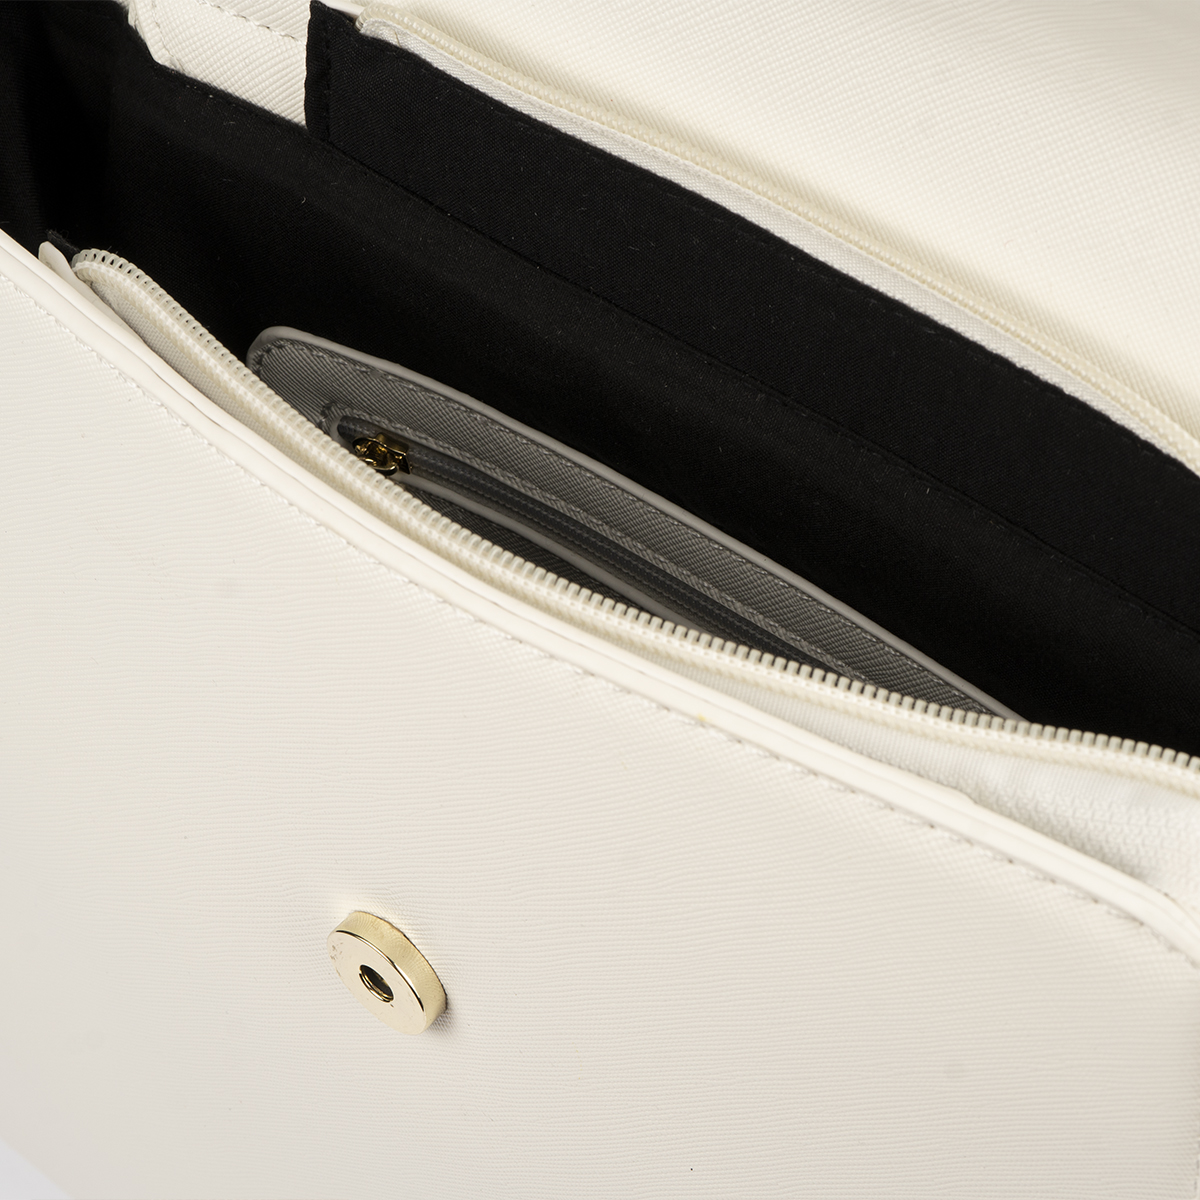 bolso mochila blanco con detalles dorados pepemoll 14125